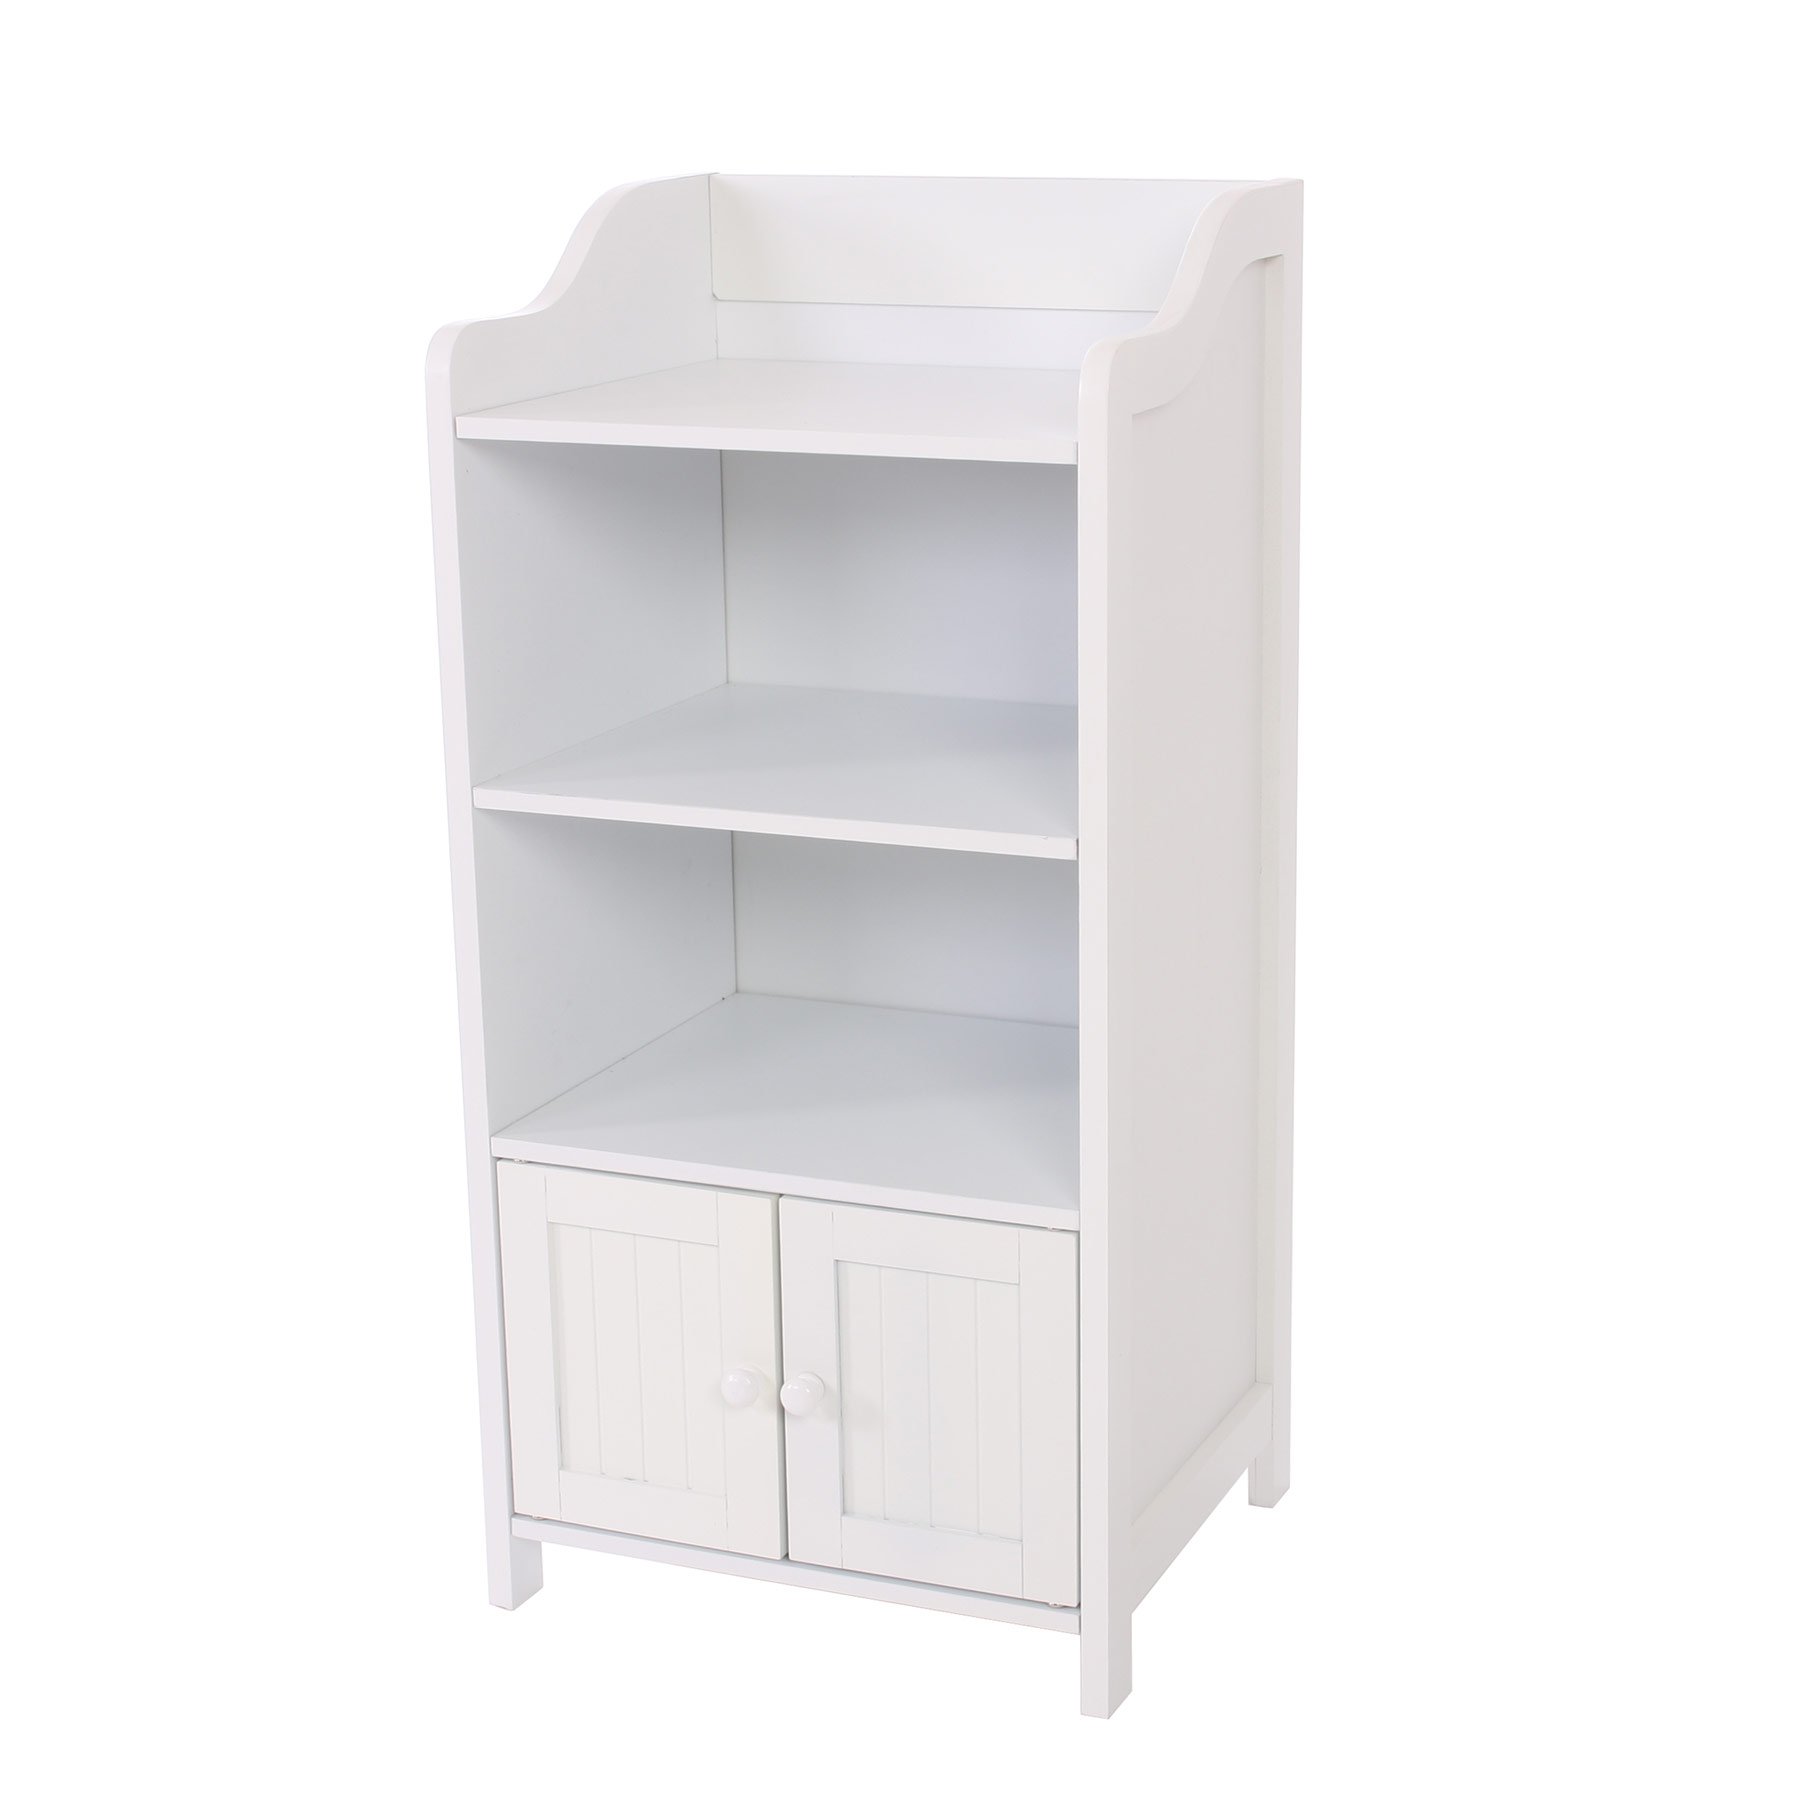 Mueble de Baño con estante y puerta, dimensiones 86x41cm, color blanco